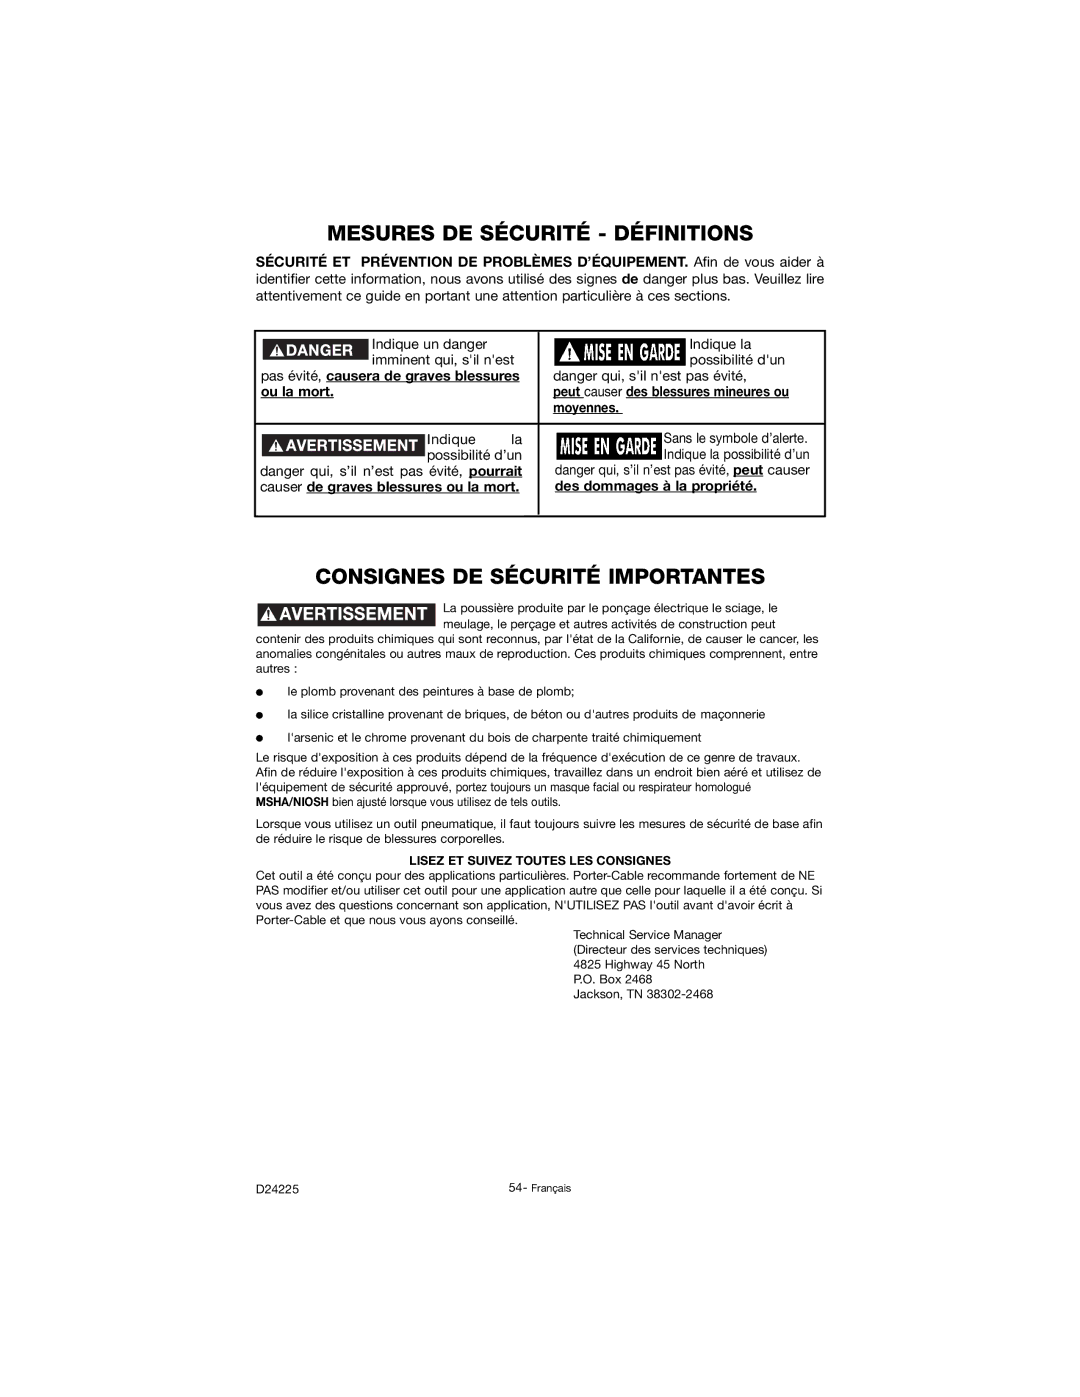 Porter-Cable D24225-049-2 Mesures DE Sécurité Définitions, Consignes DE Sécurité Importantes, Ou la mort, Moyennes 